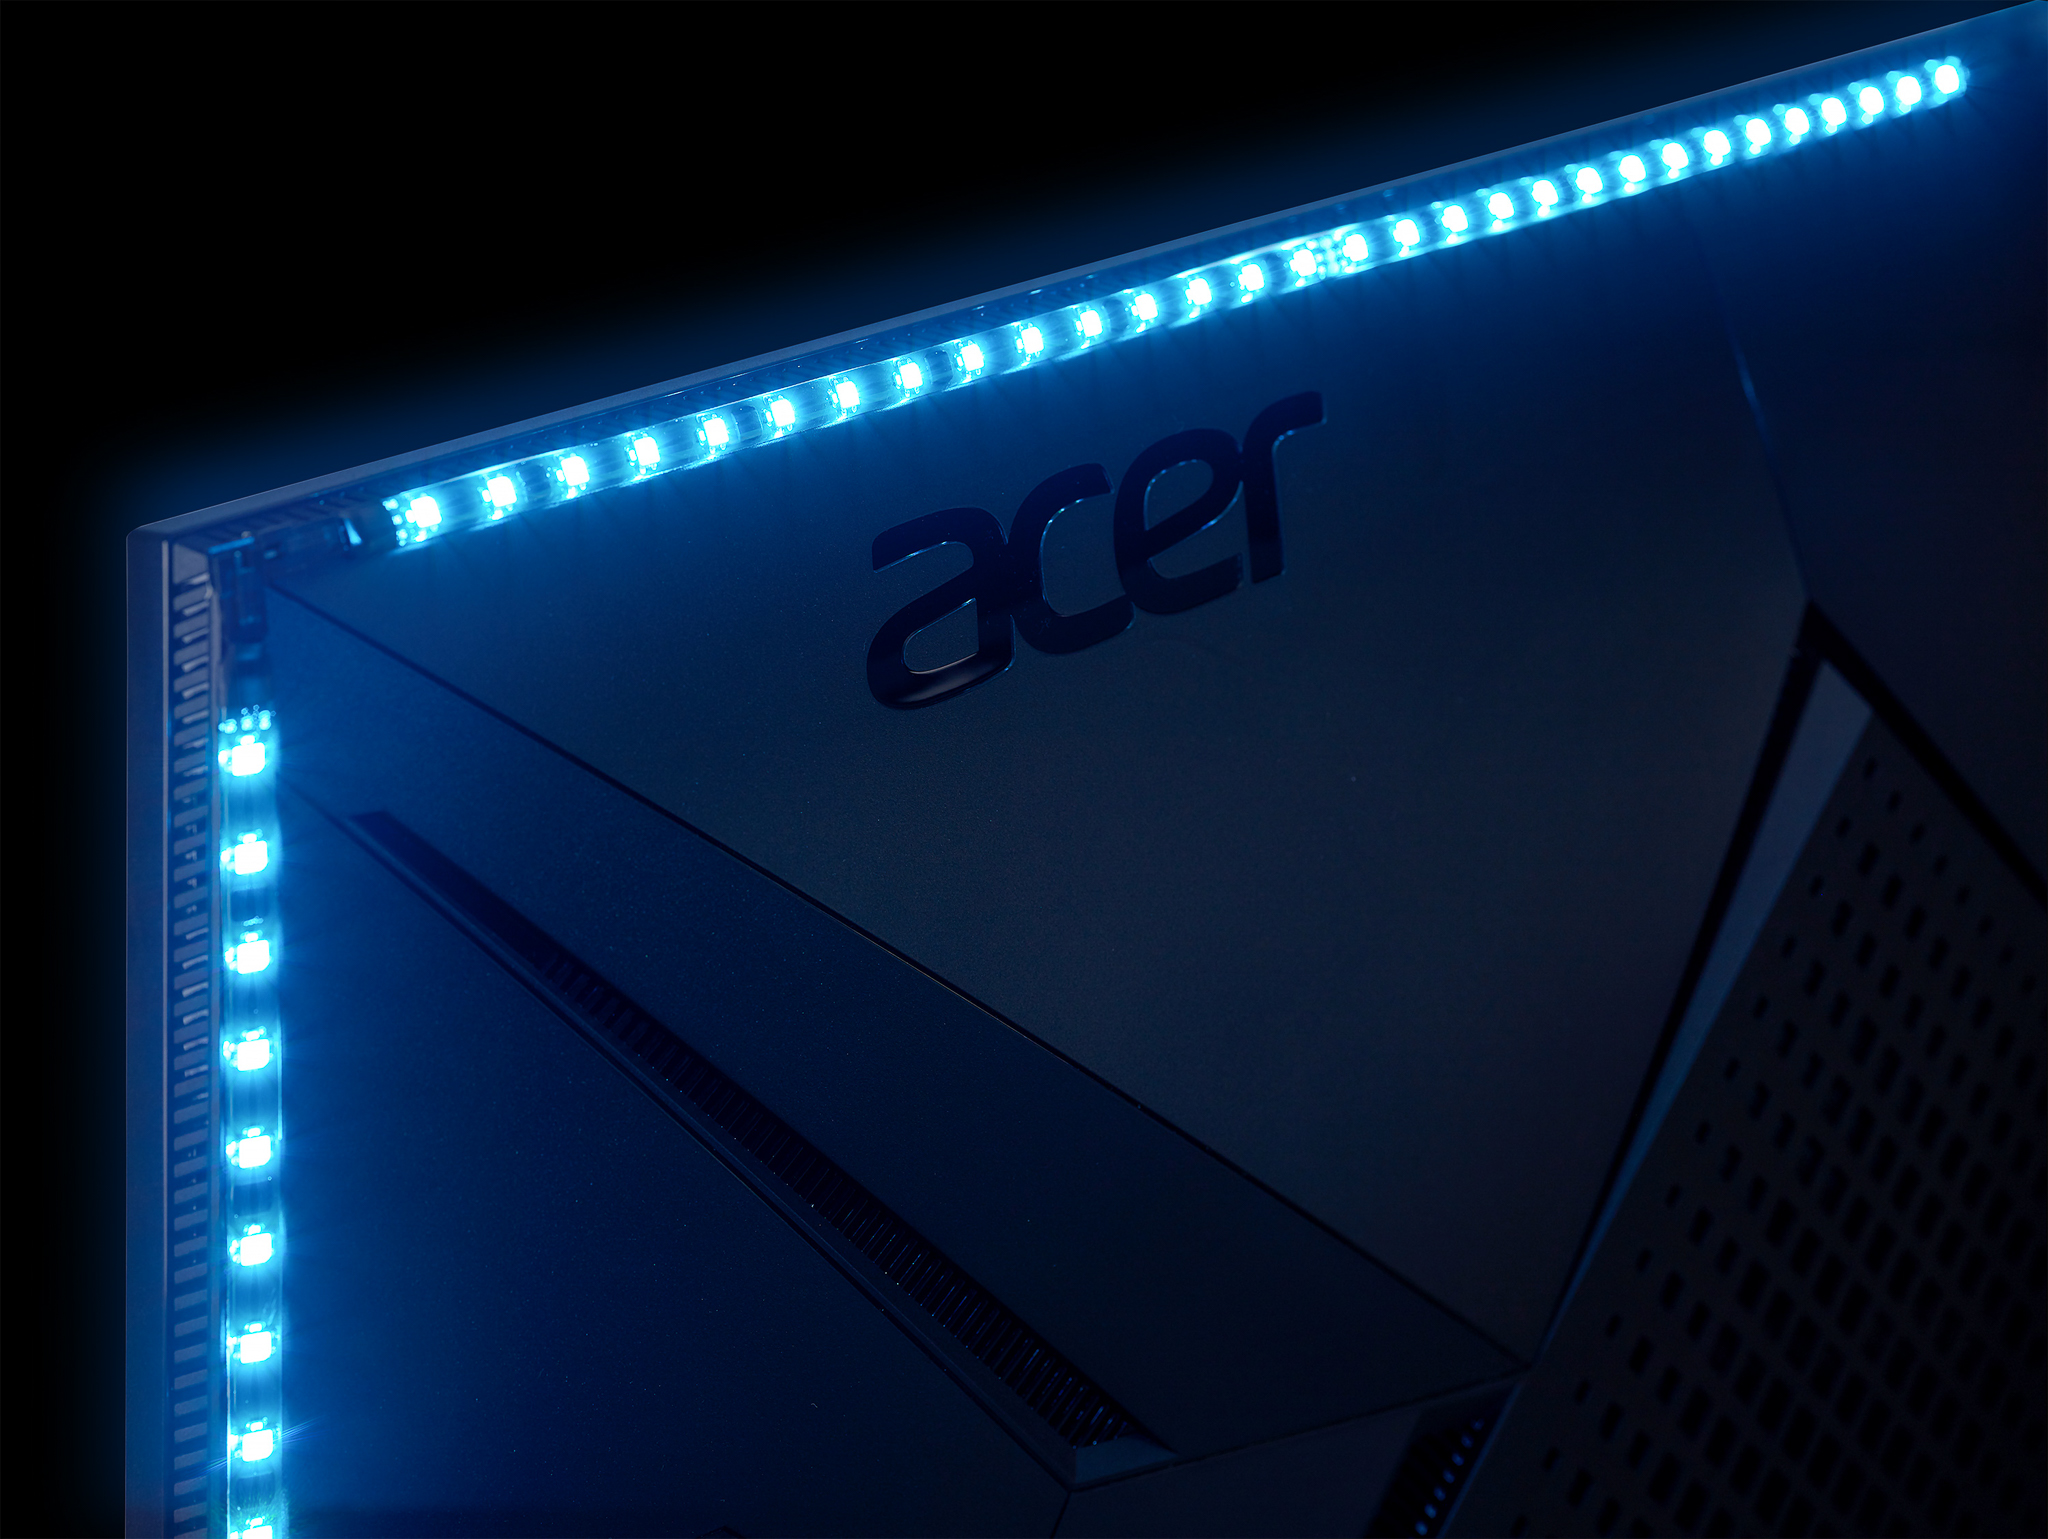 Acer mở rộng dải màn hình Predator với 3 mẫu màn hình HDR mới